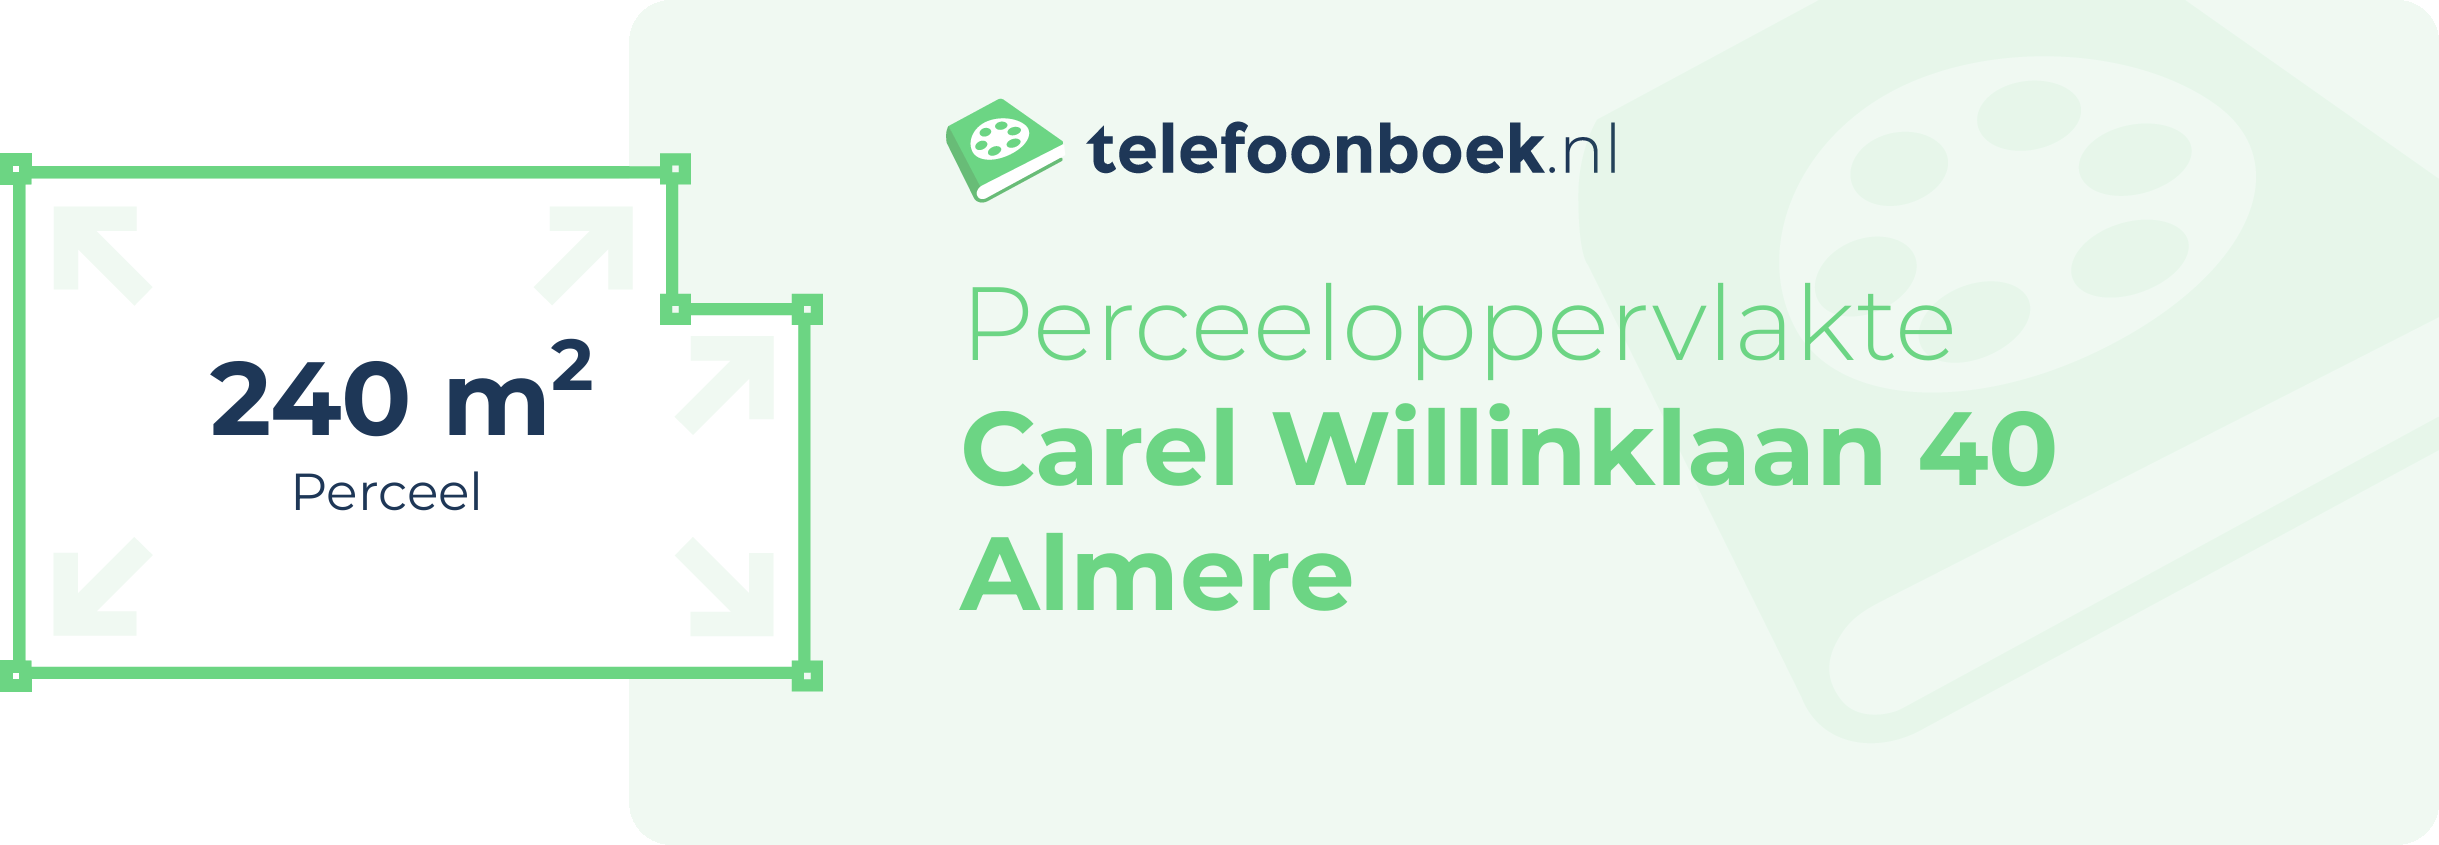 Perceeloppervlakte Carel Willinklaan 40 Almere